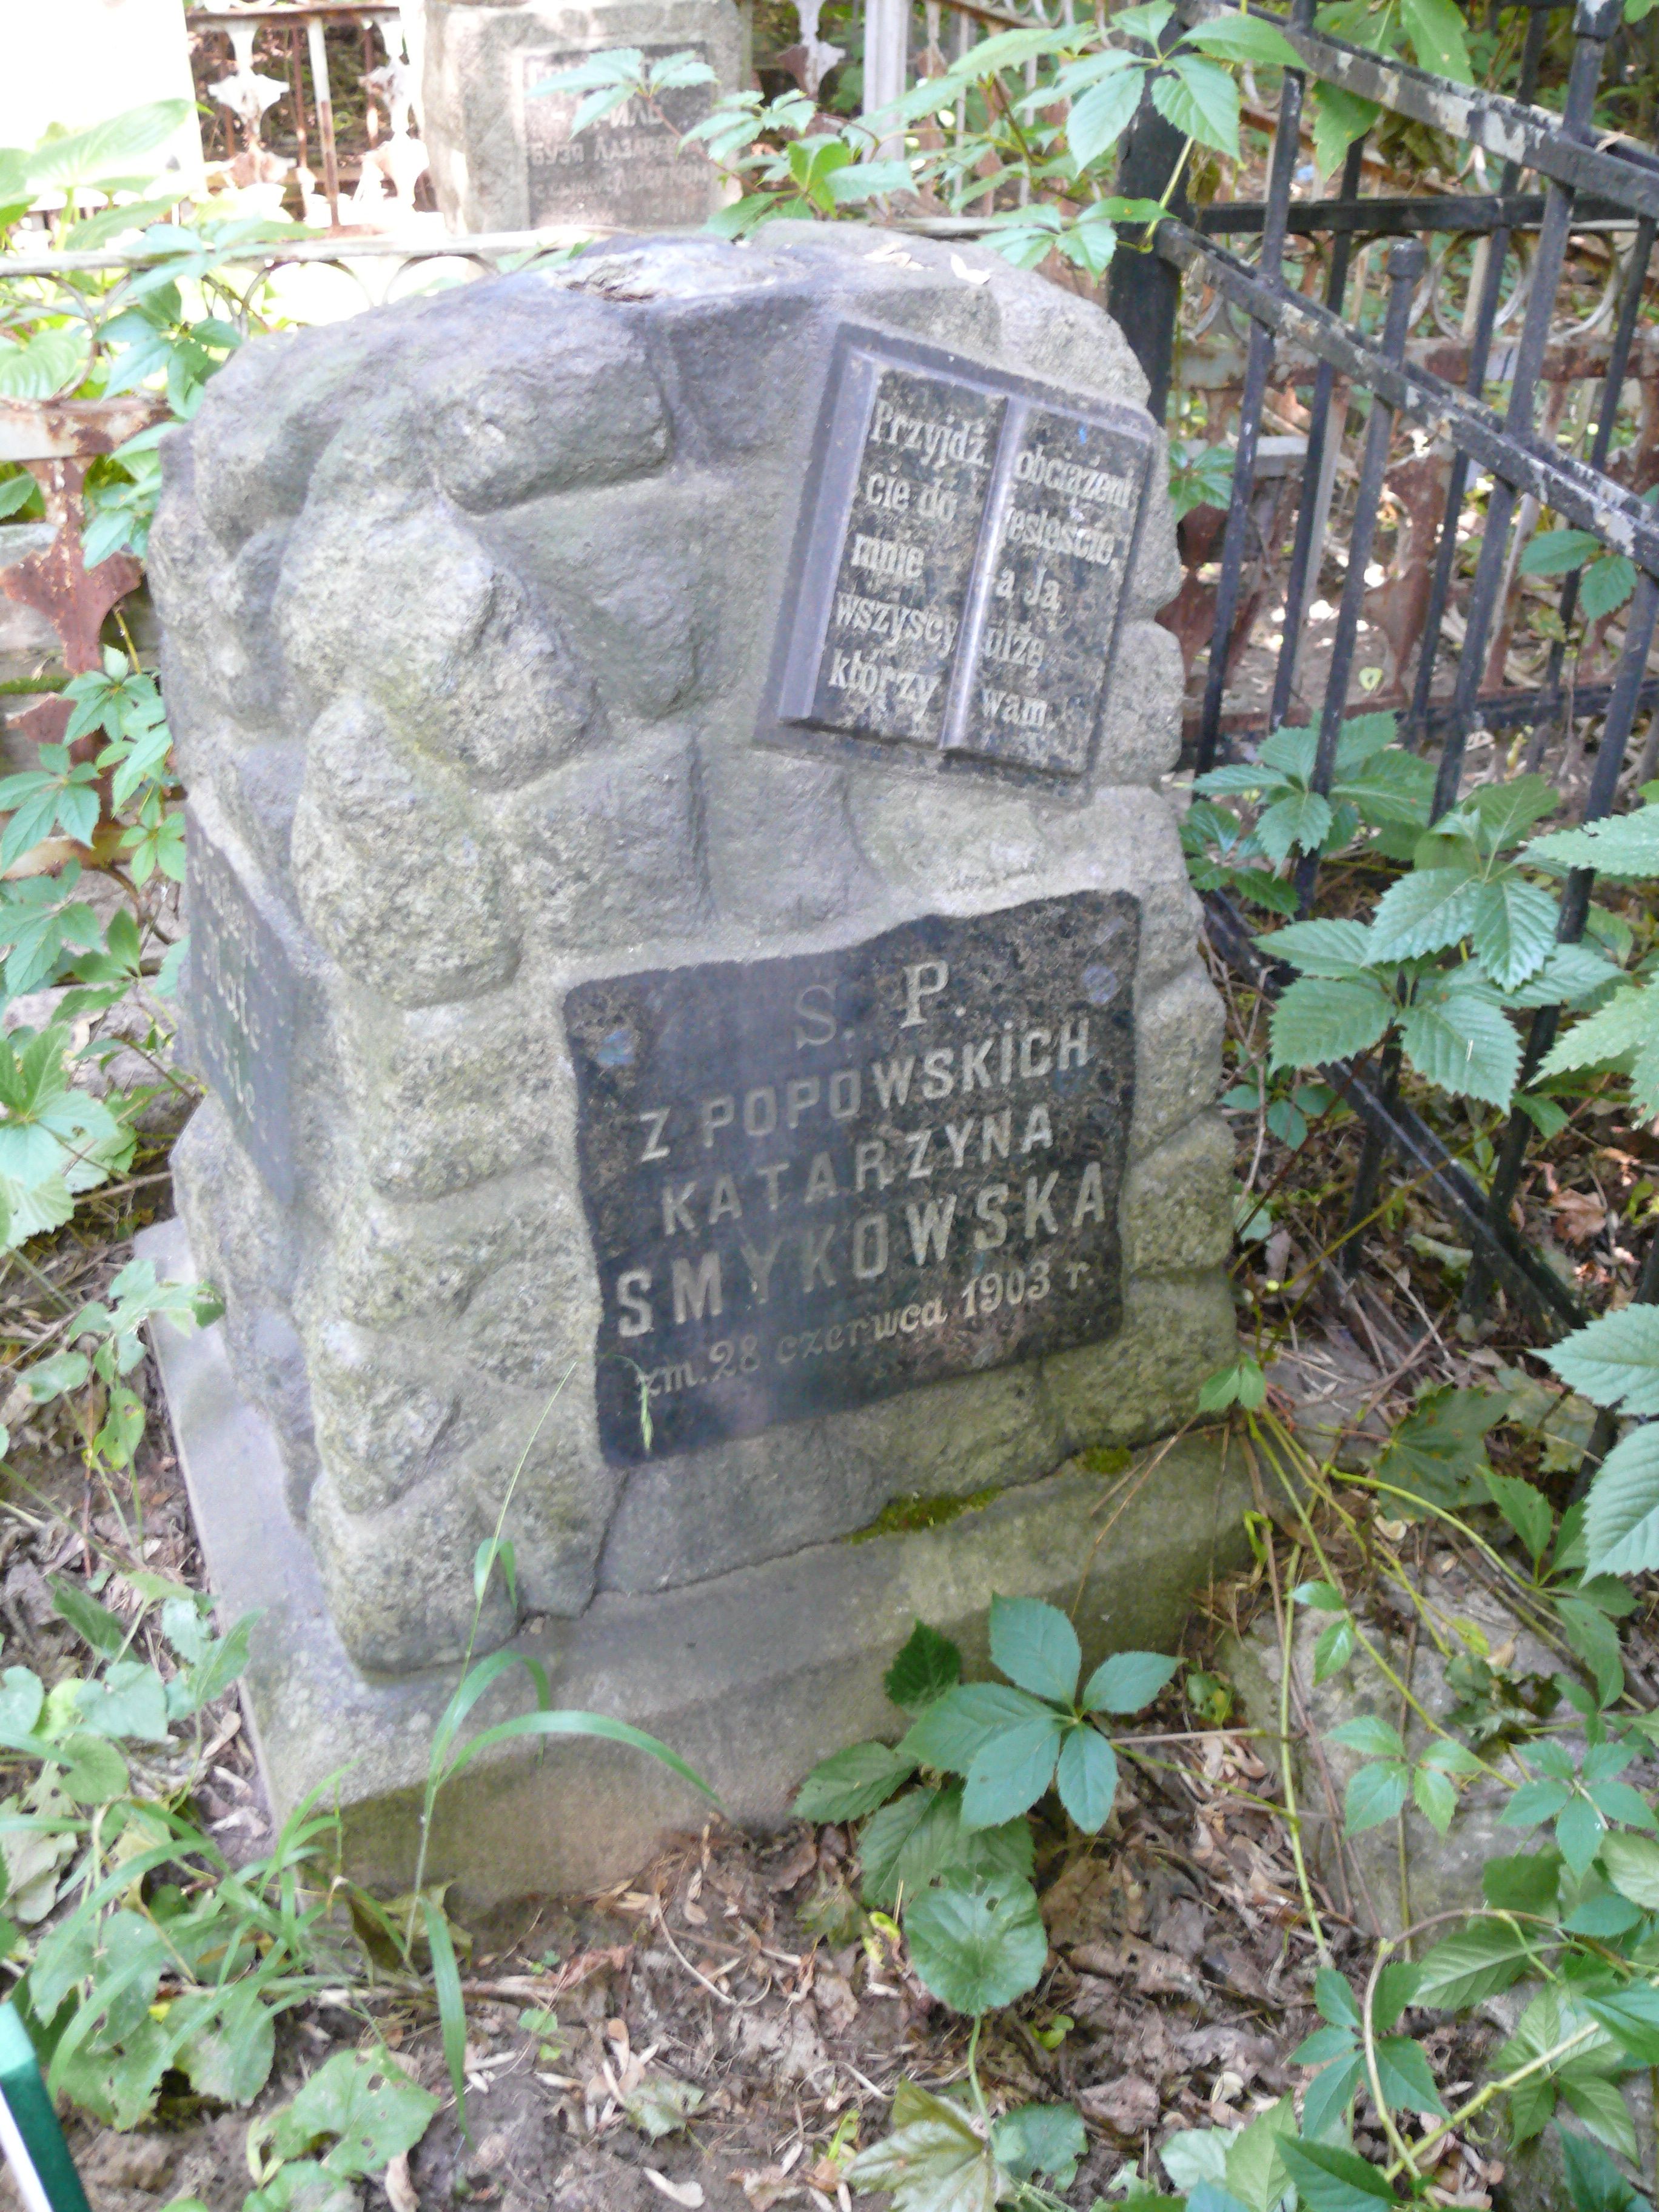 Tombstone of Katarzyna Smykowska